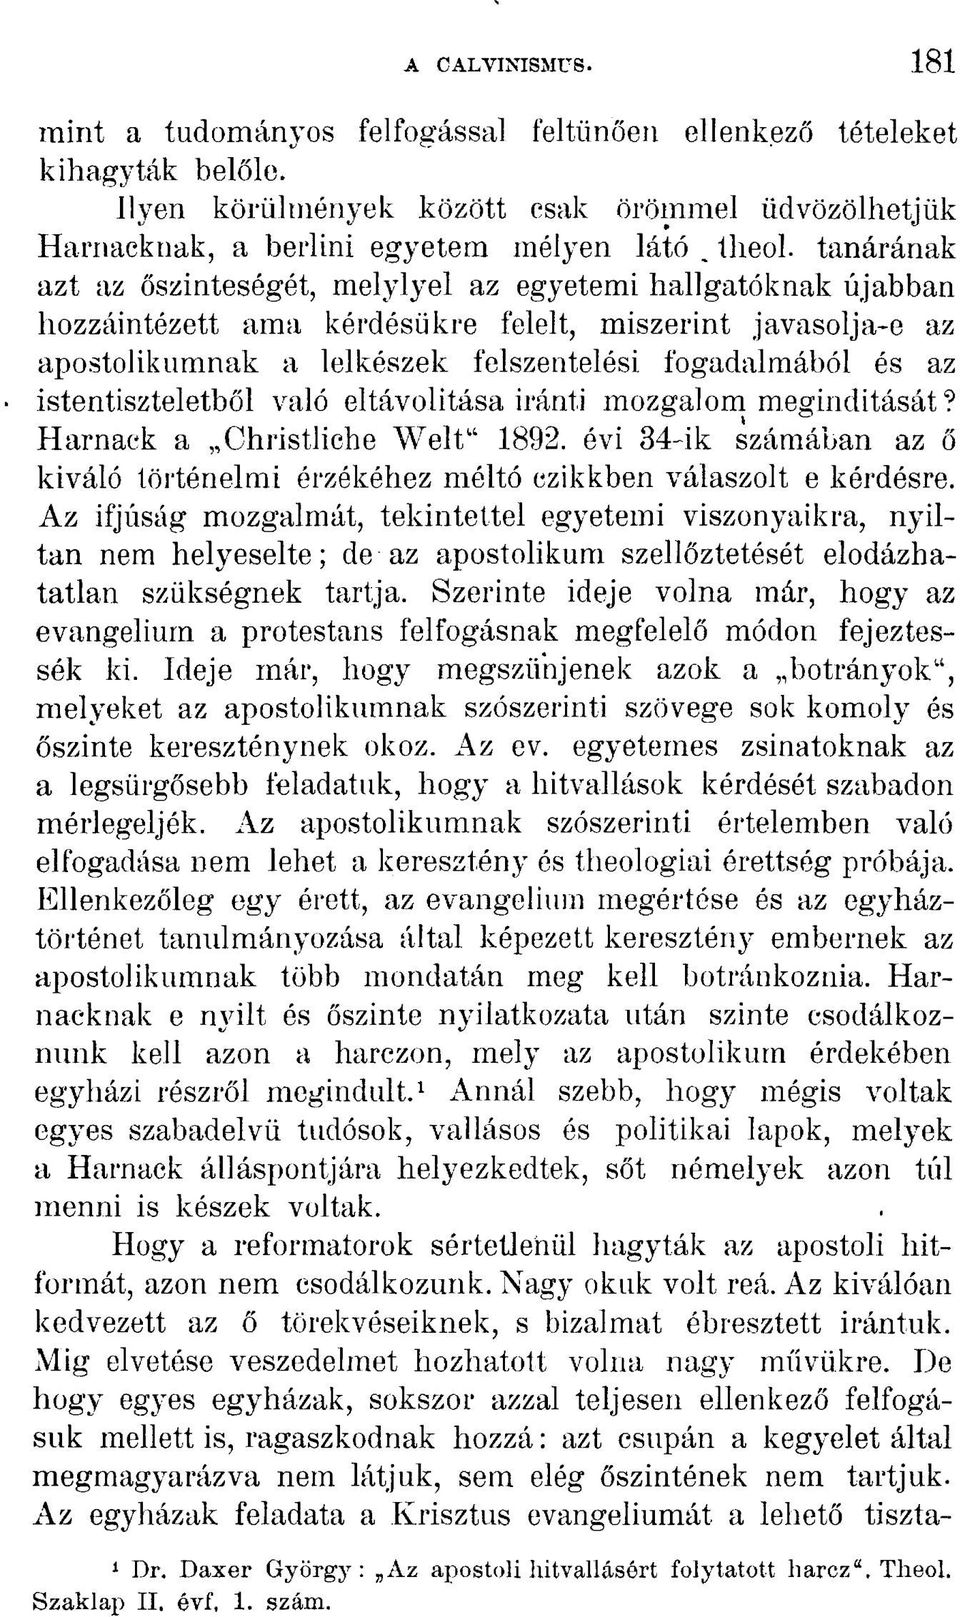 istentiszteletből való eltávolítása iránti mozgalom megindítását? Harnack a Christliche Welt" 1892. évi 34-ik számában az ő kiváló történelmi érzékéhez méltó czikkben válaszolt e kérdésre.